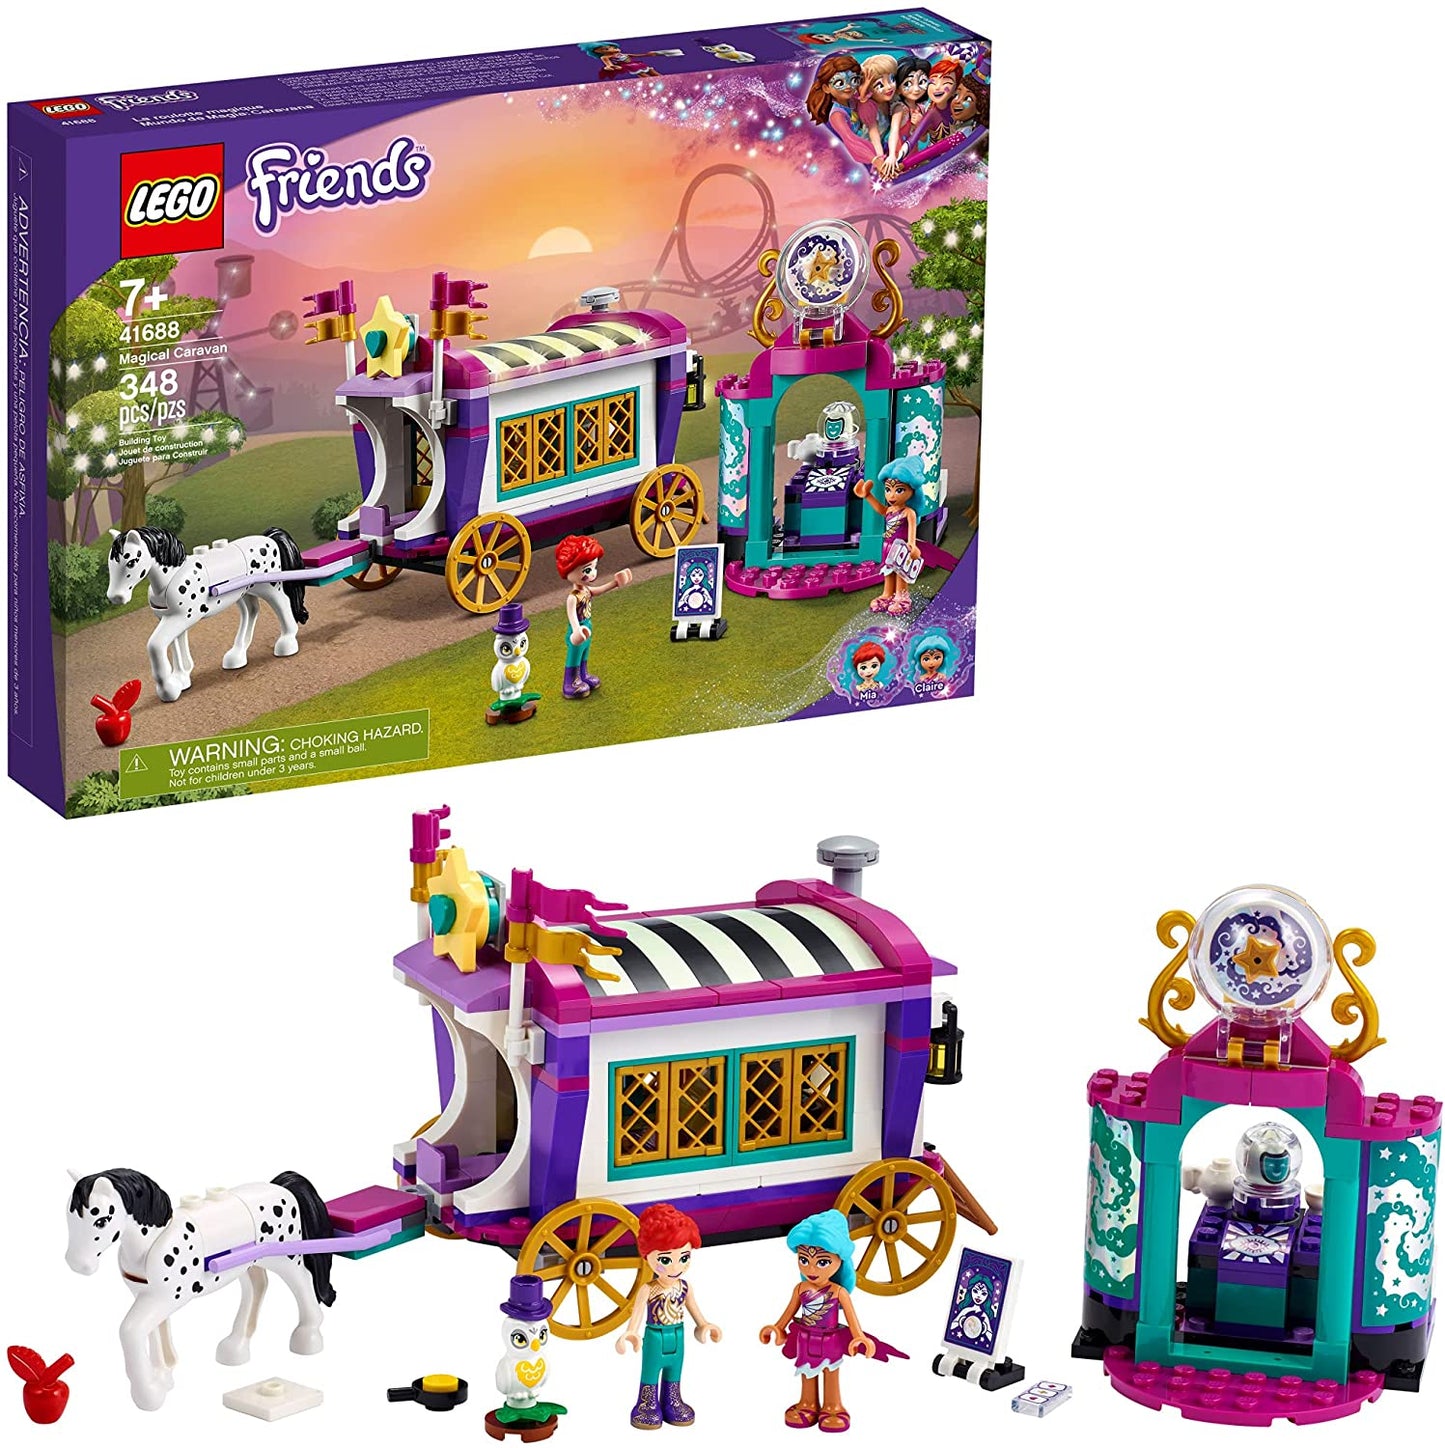 LEGO Friends - Magical Caravan 41688